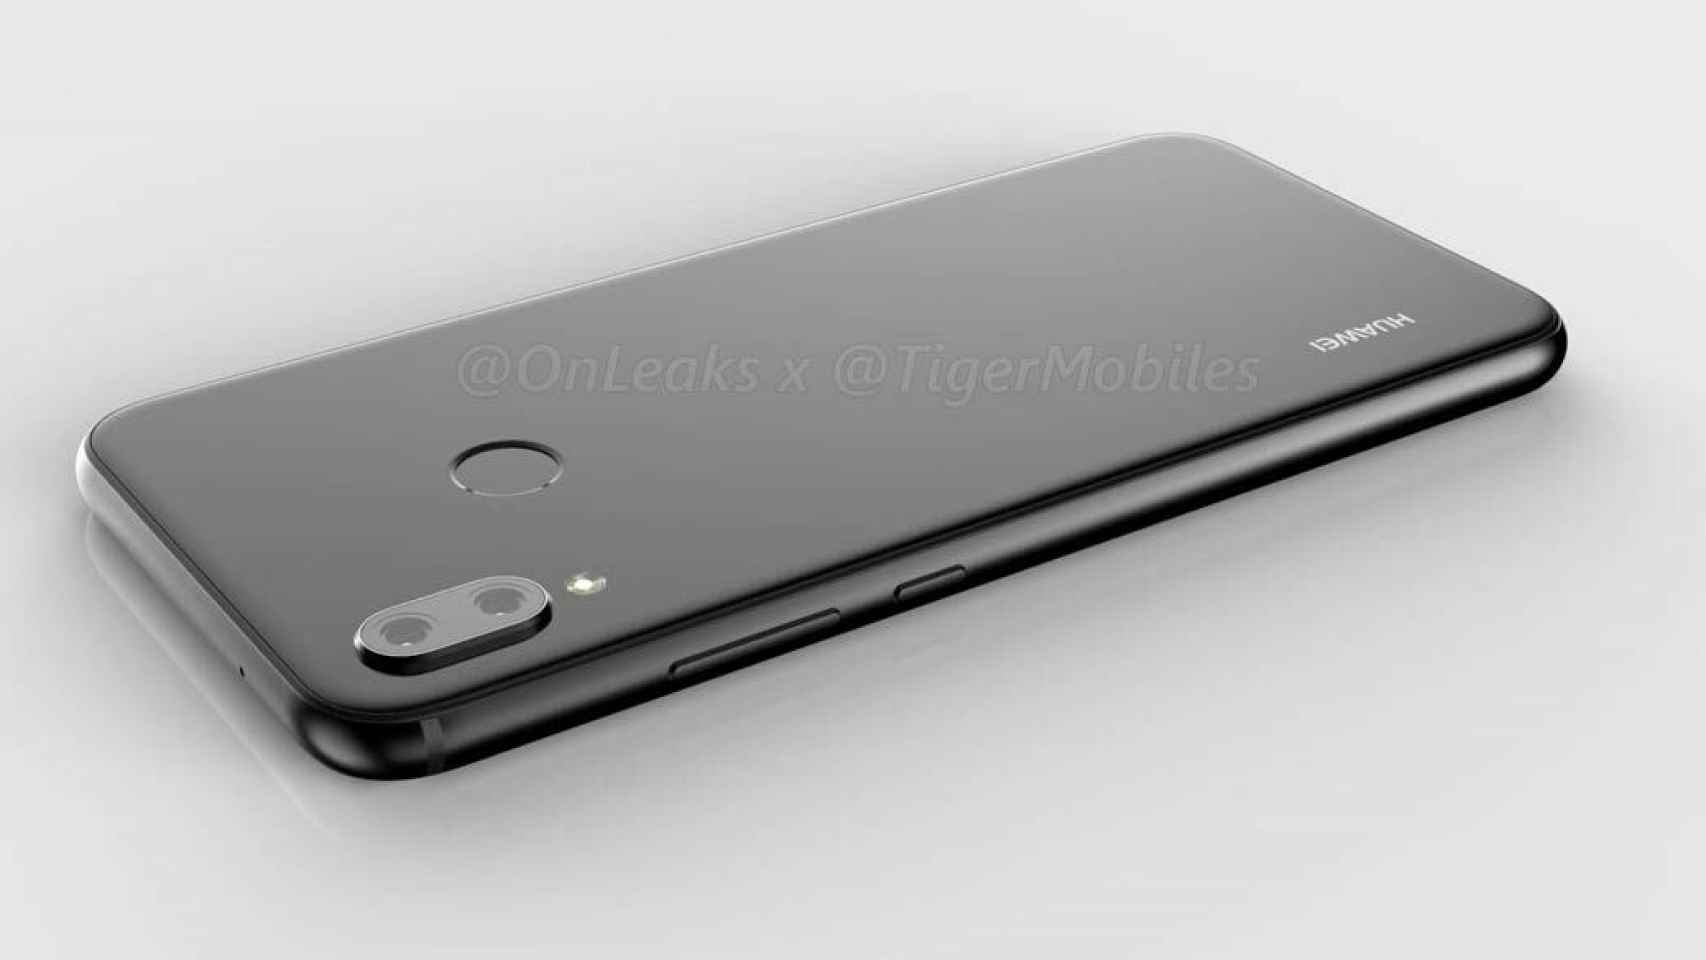 El Huawei P20 Lite confirma su parecido con el iPhone X en fotografías  reales